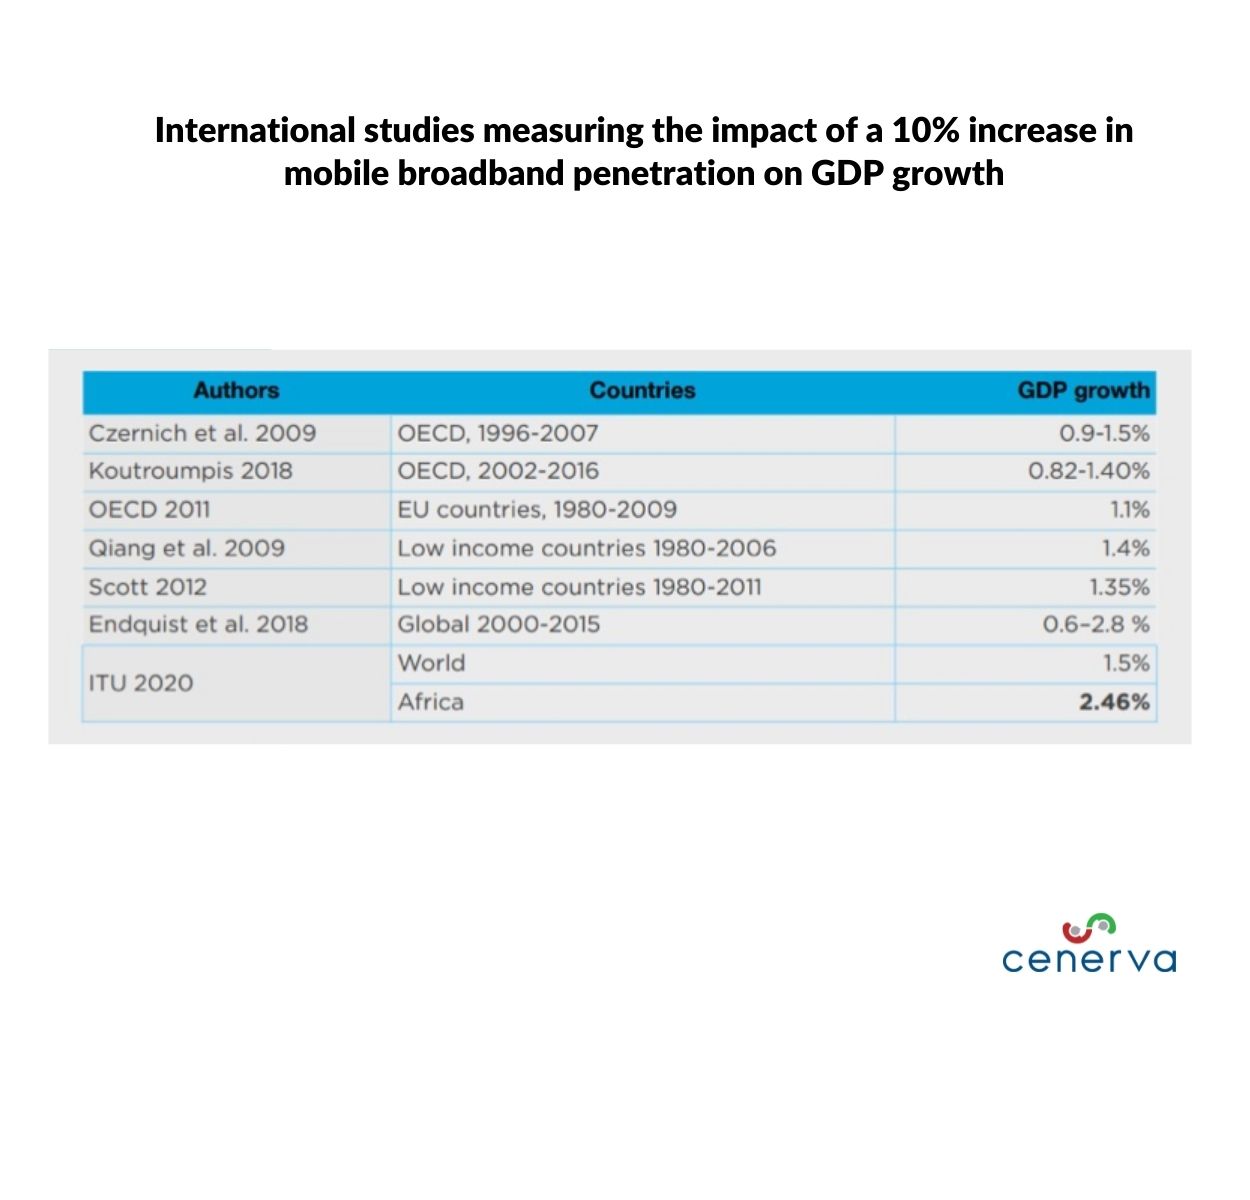 Estudos internacionais que medem o impacto de um aumento de 10% da penetração da banda larga móvel no crescimento do PIB